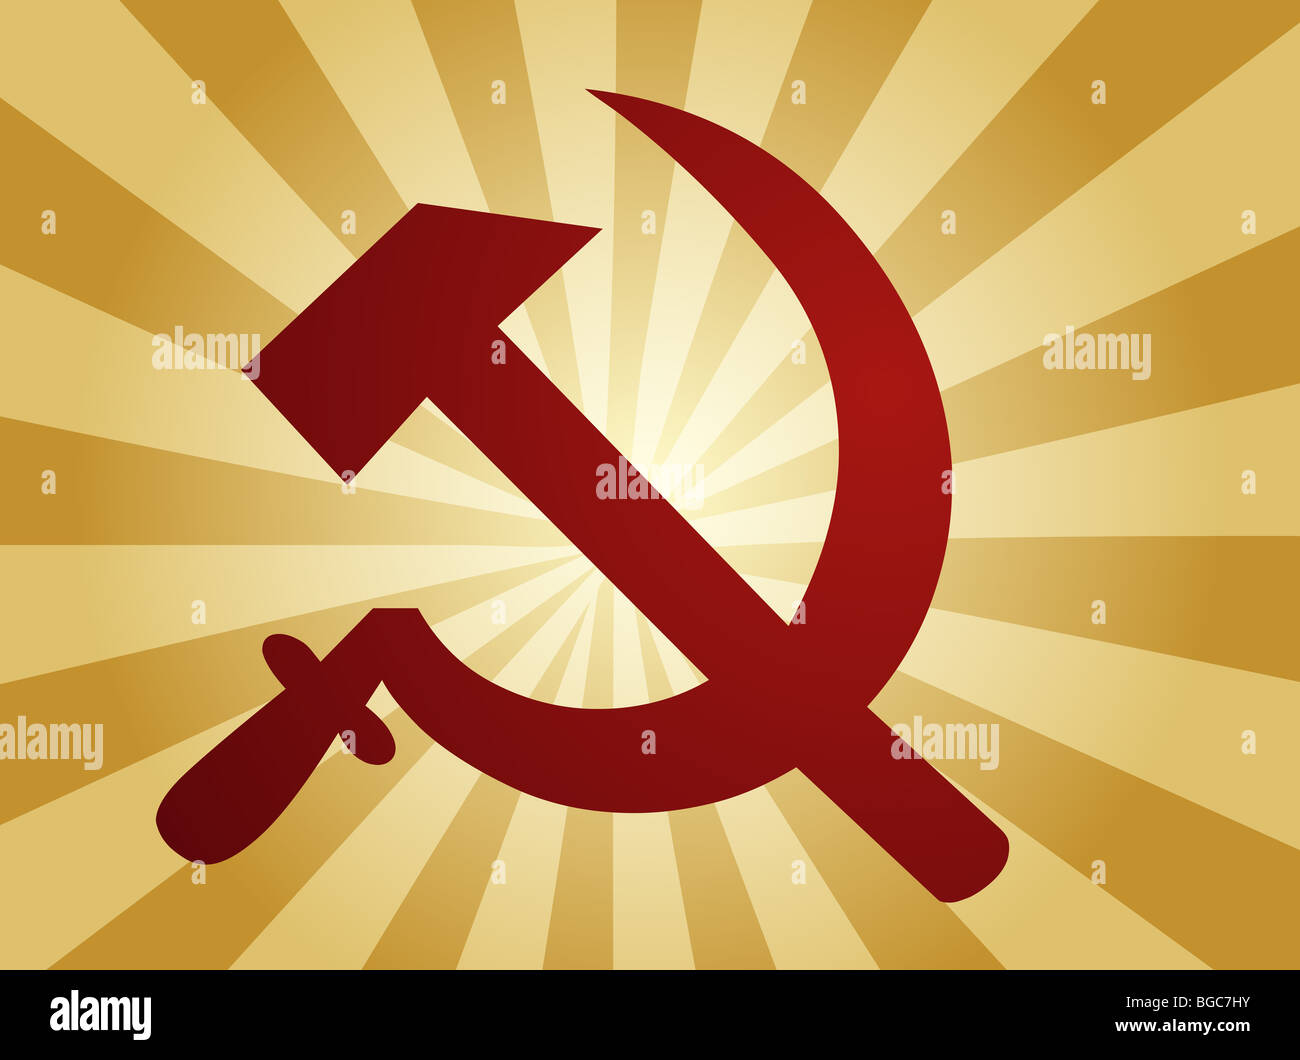 Urss soviético de la hoz y el martillo símbolo político Fotografía de stock  - Alamy